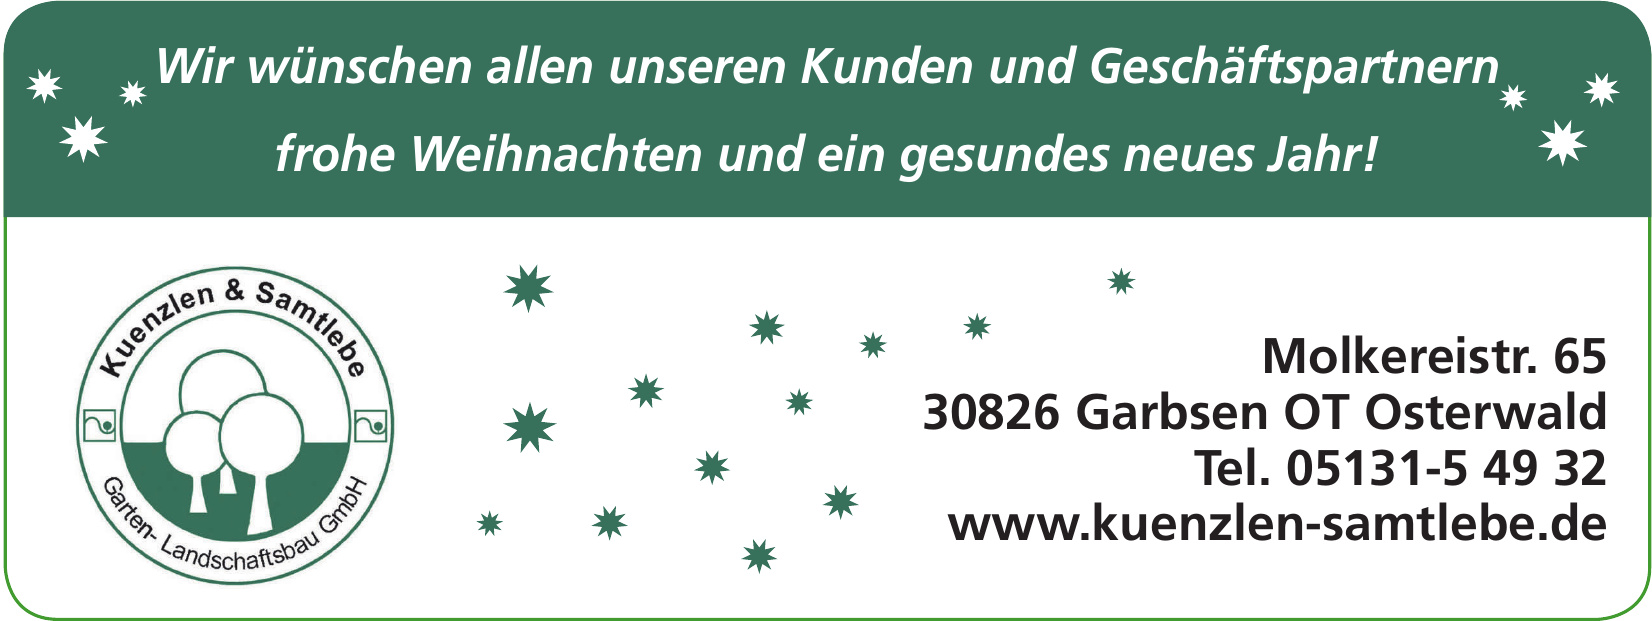 Kuenzlen & Samtlebe Garten- und Landschaftsbau GmbH